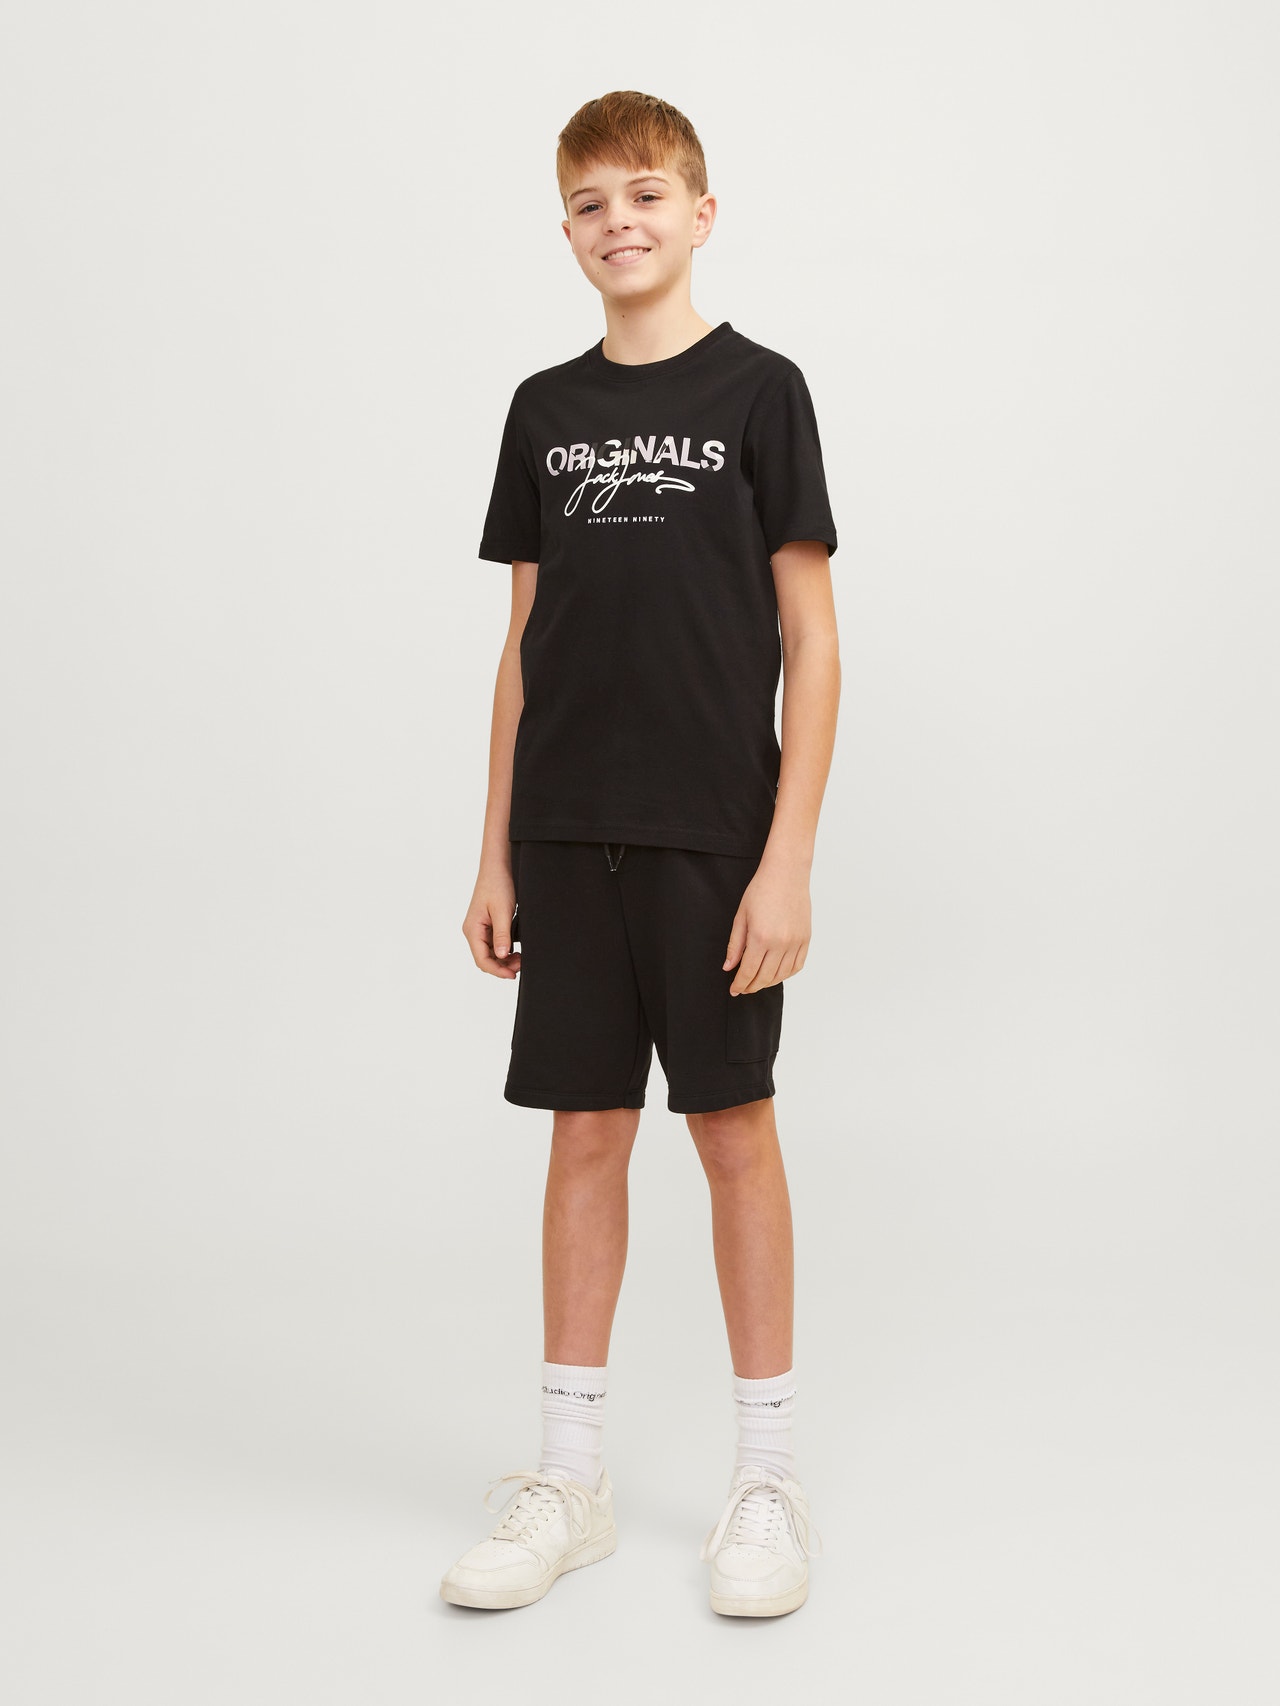 Jack & Jones Gedrukt T-shirt Voor jongens -Black - 12257133